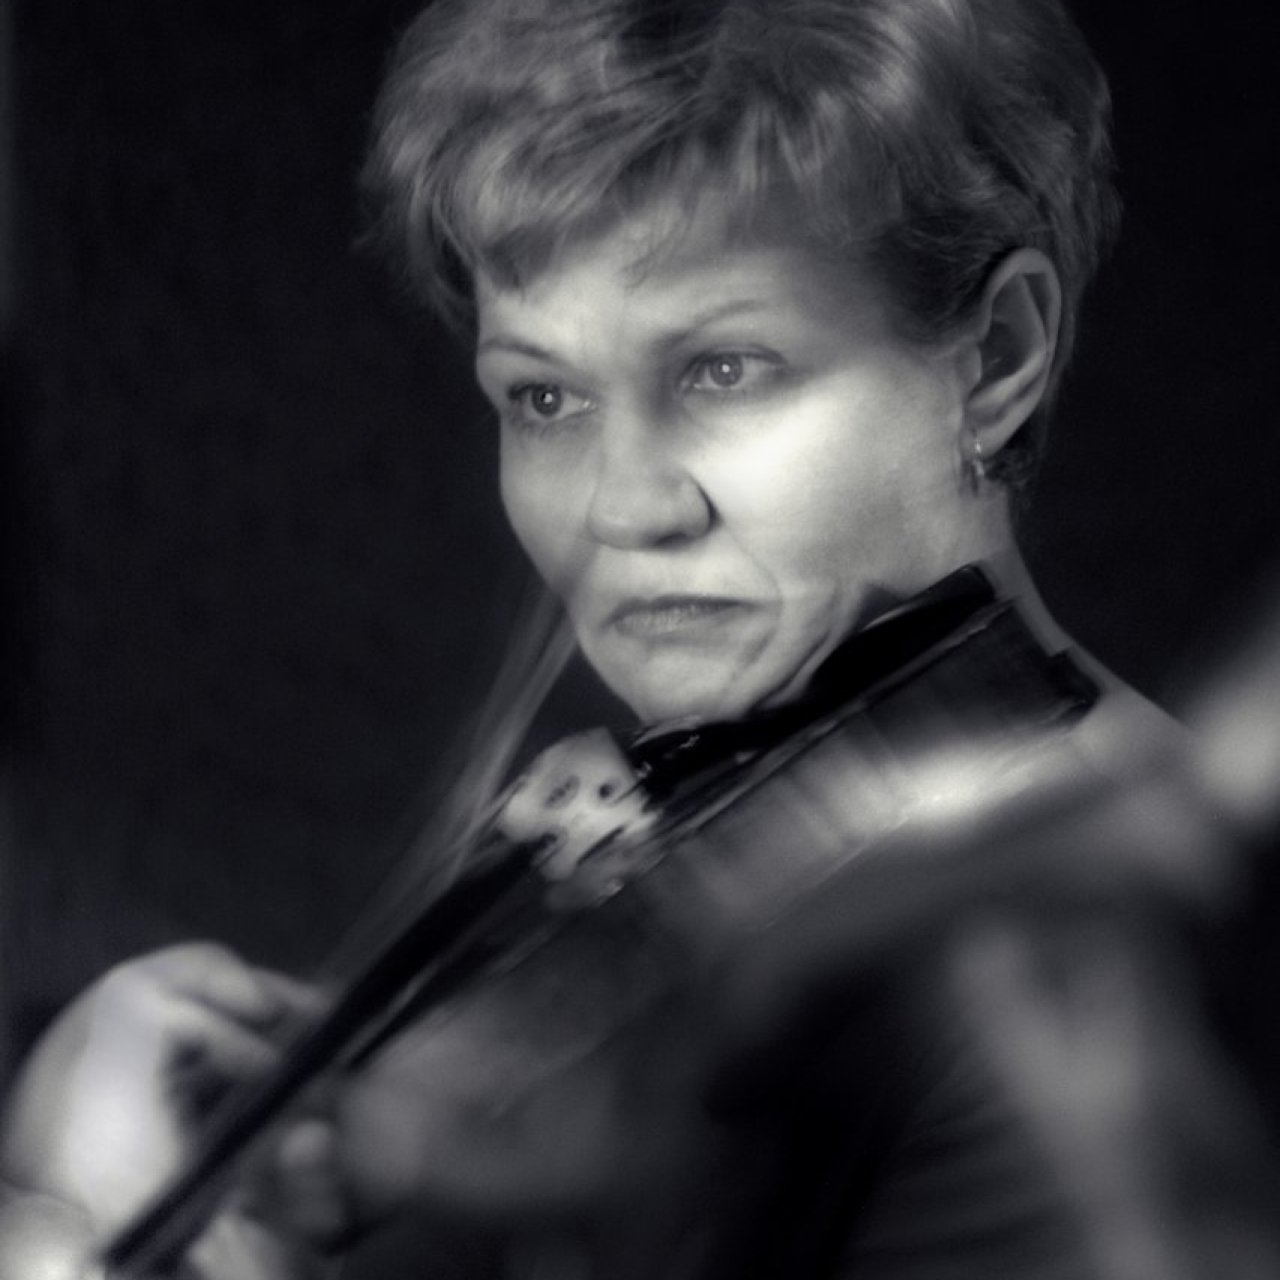 Smuikininkė Angelė Litvaitytė – apie orkestro koncertmeisterio vietos  privalumus ir minusus